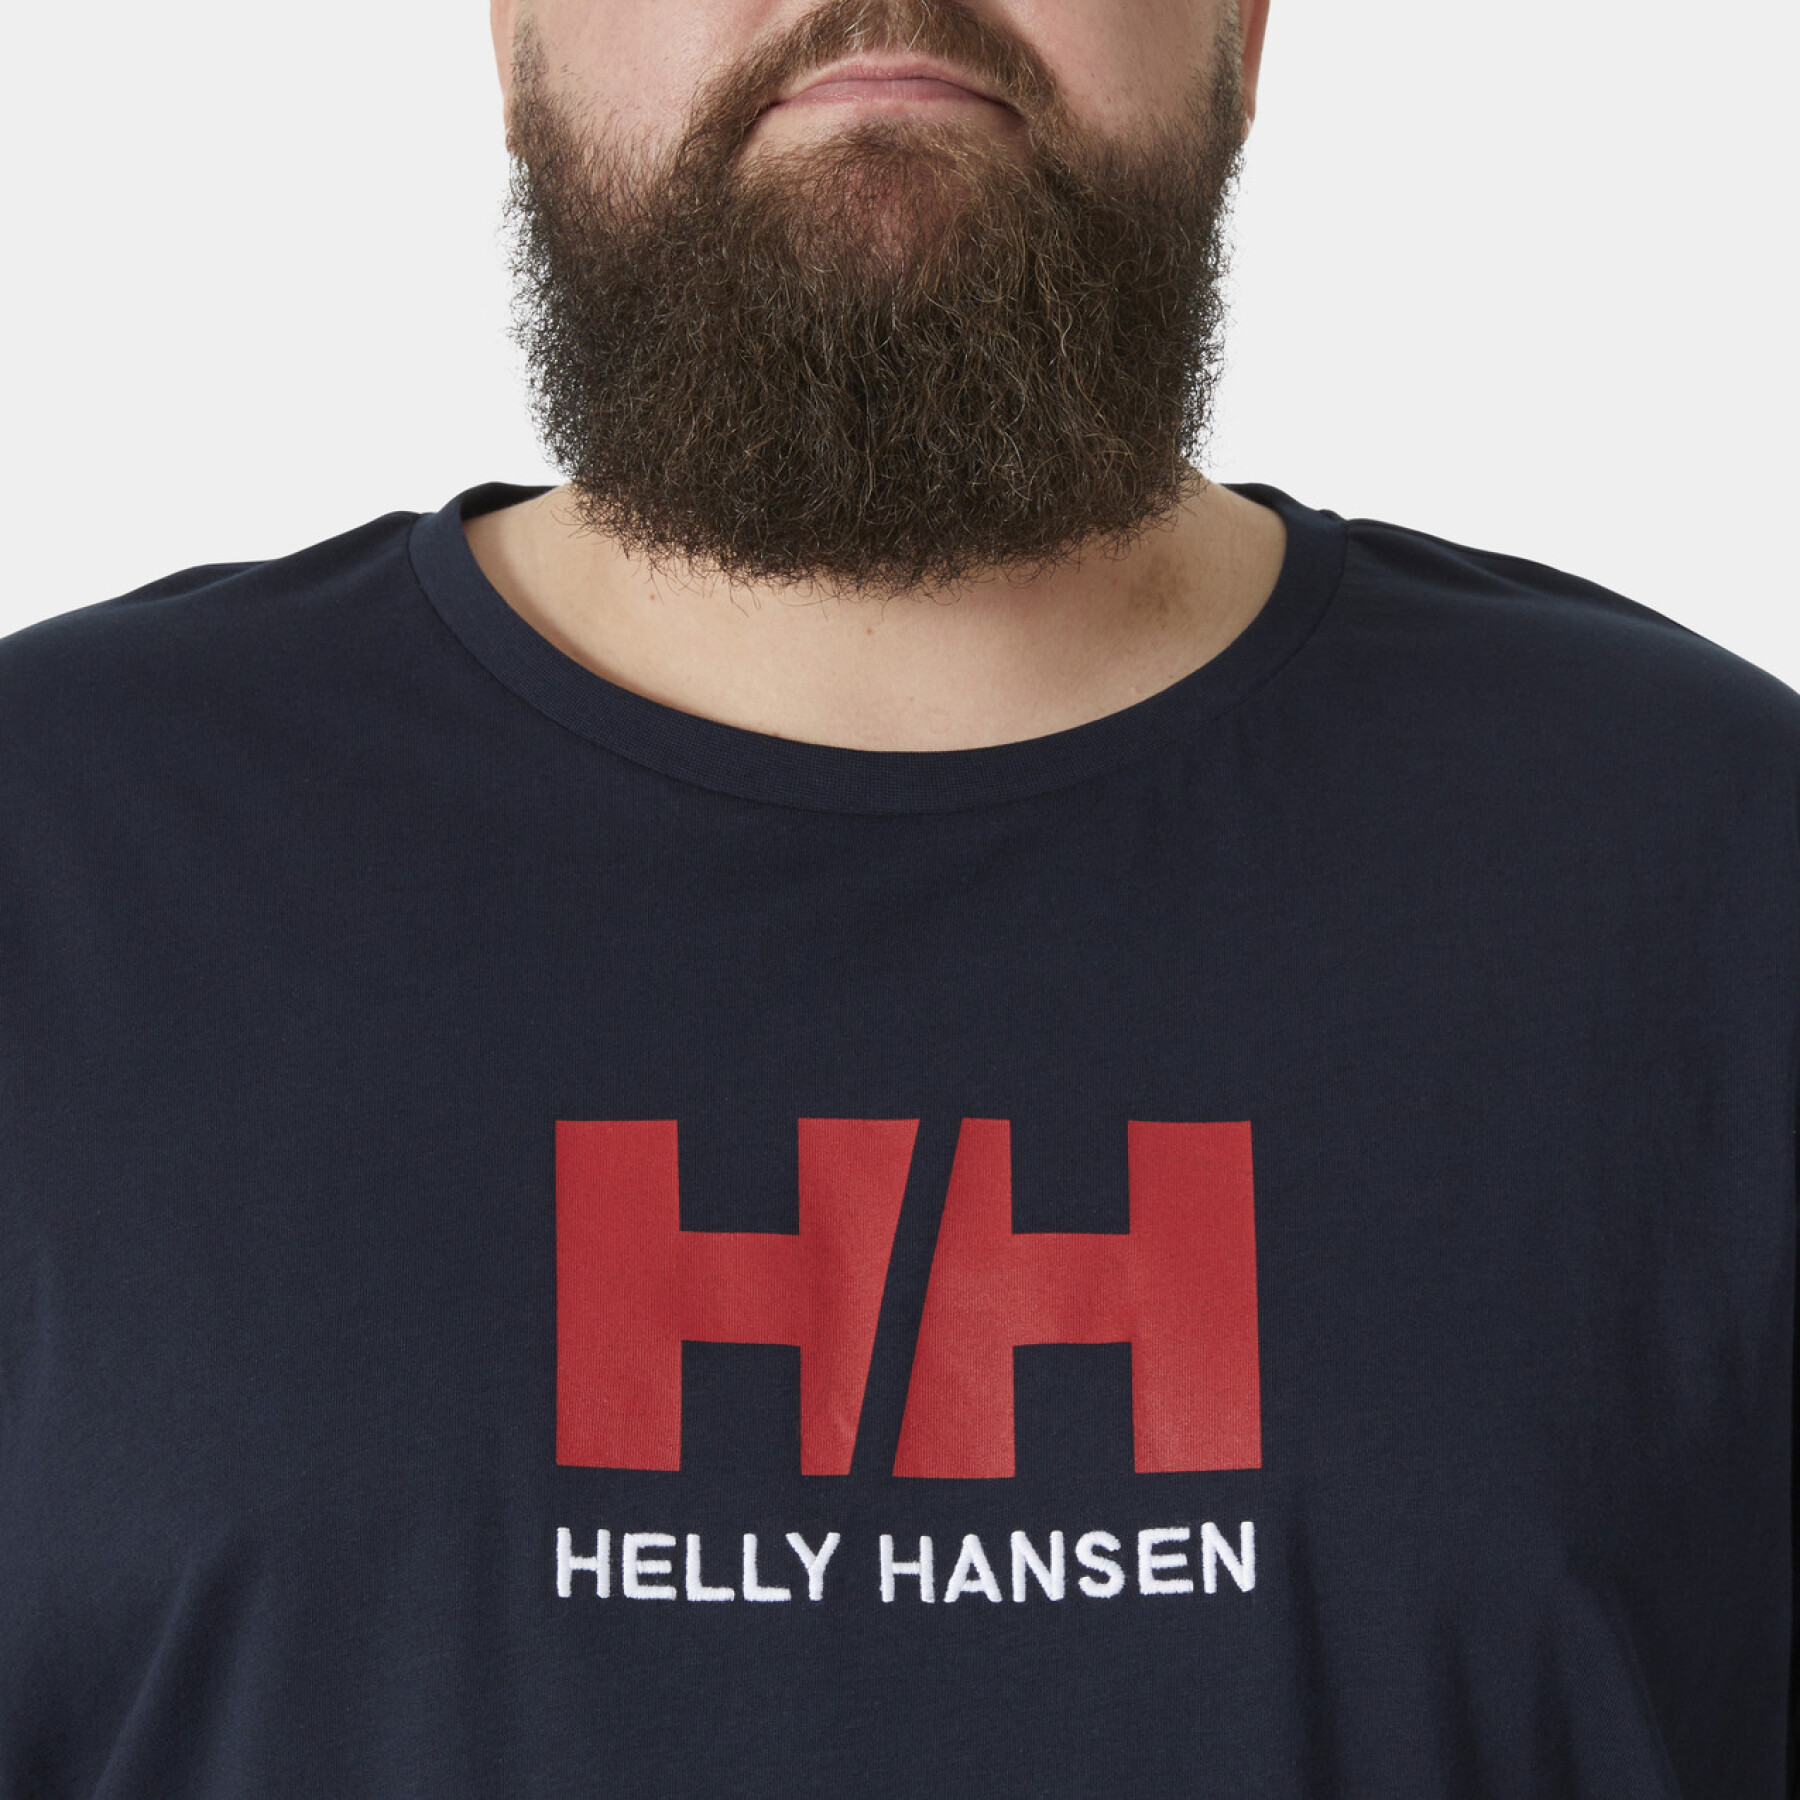 Koszulka damska Helly Hansen logo